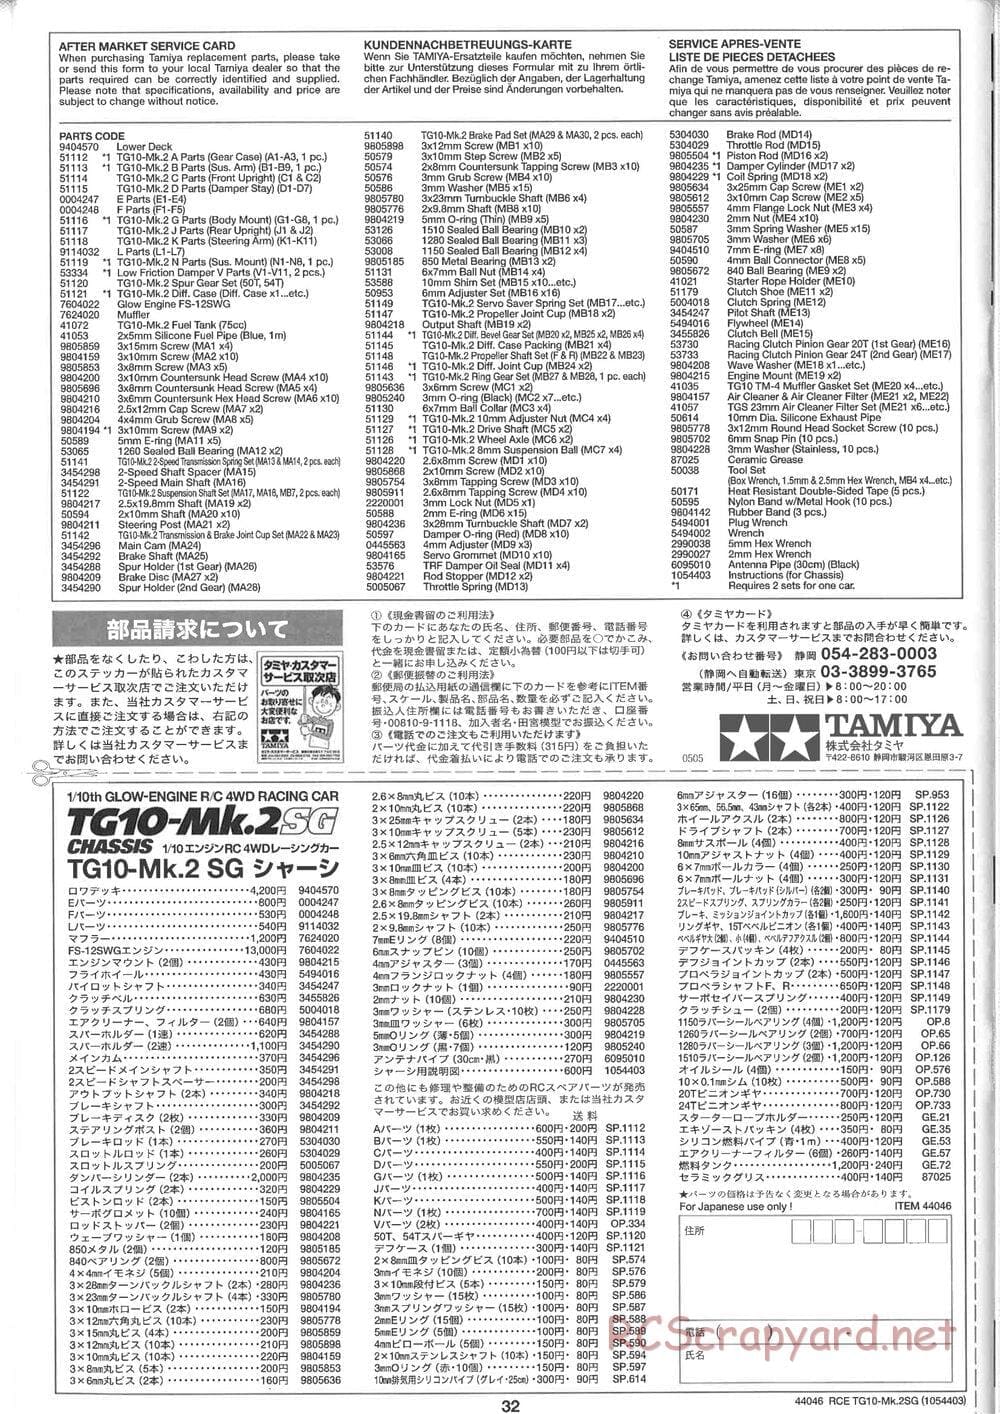 Tamiya - TG10 Mk.2SG Chassis - Manual - Page 32